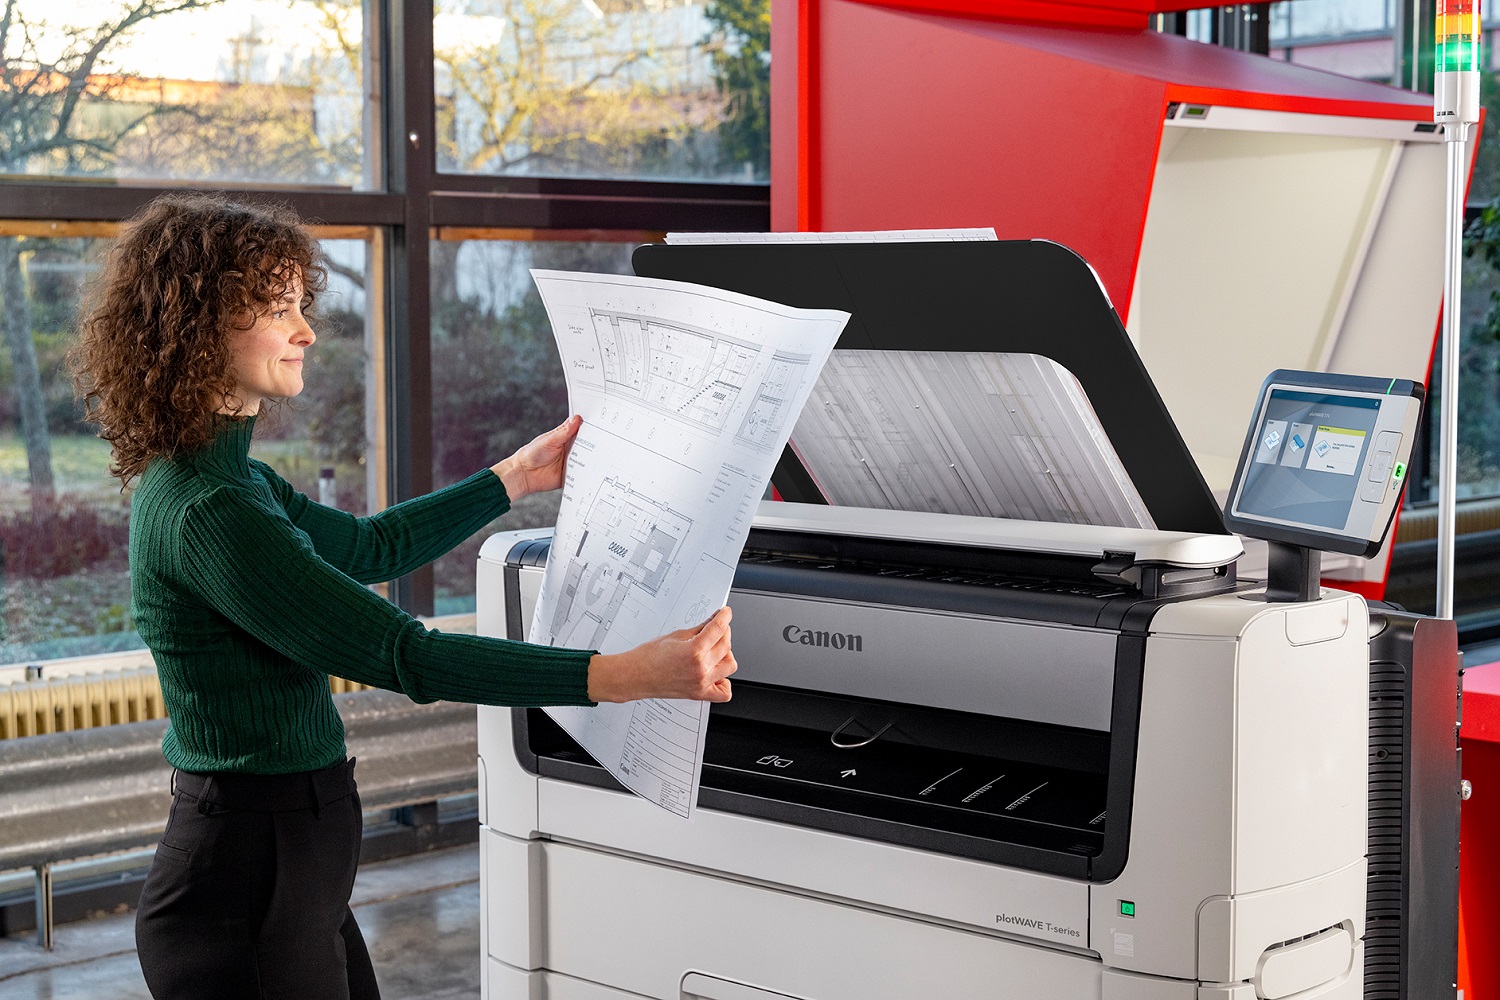 佳能发布新一代高速宽幅面打印机 plotWAVE和colorWAVE